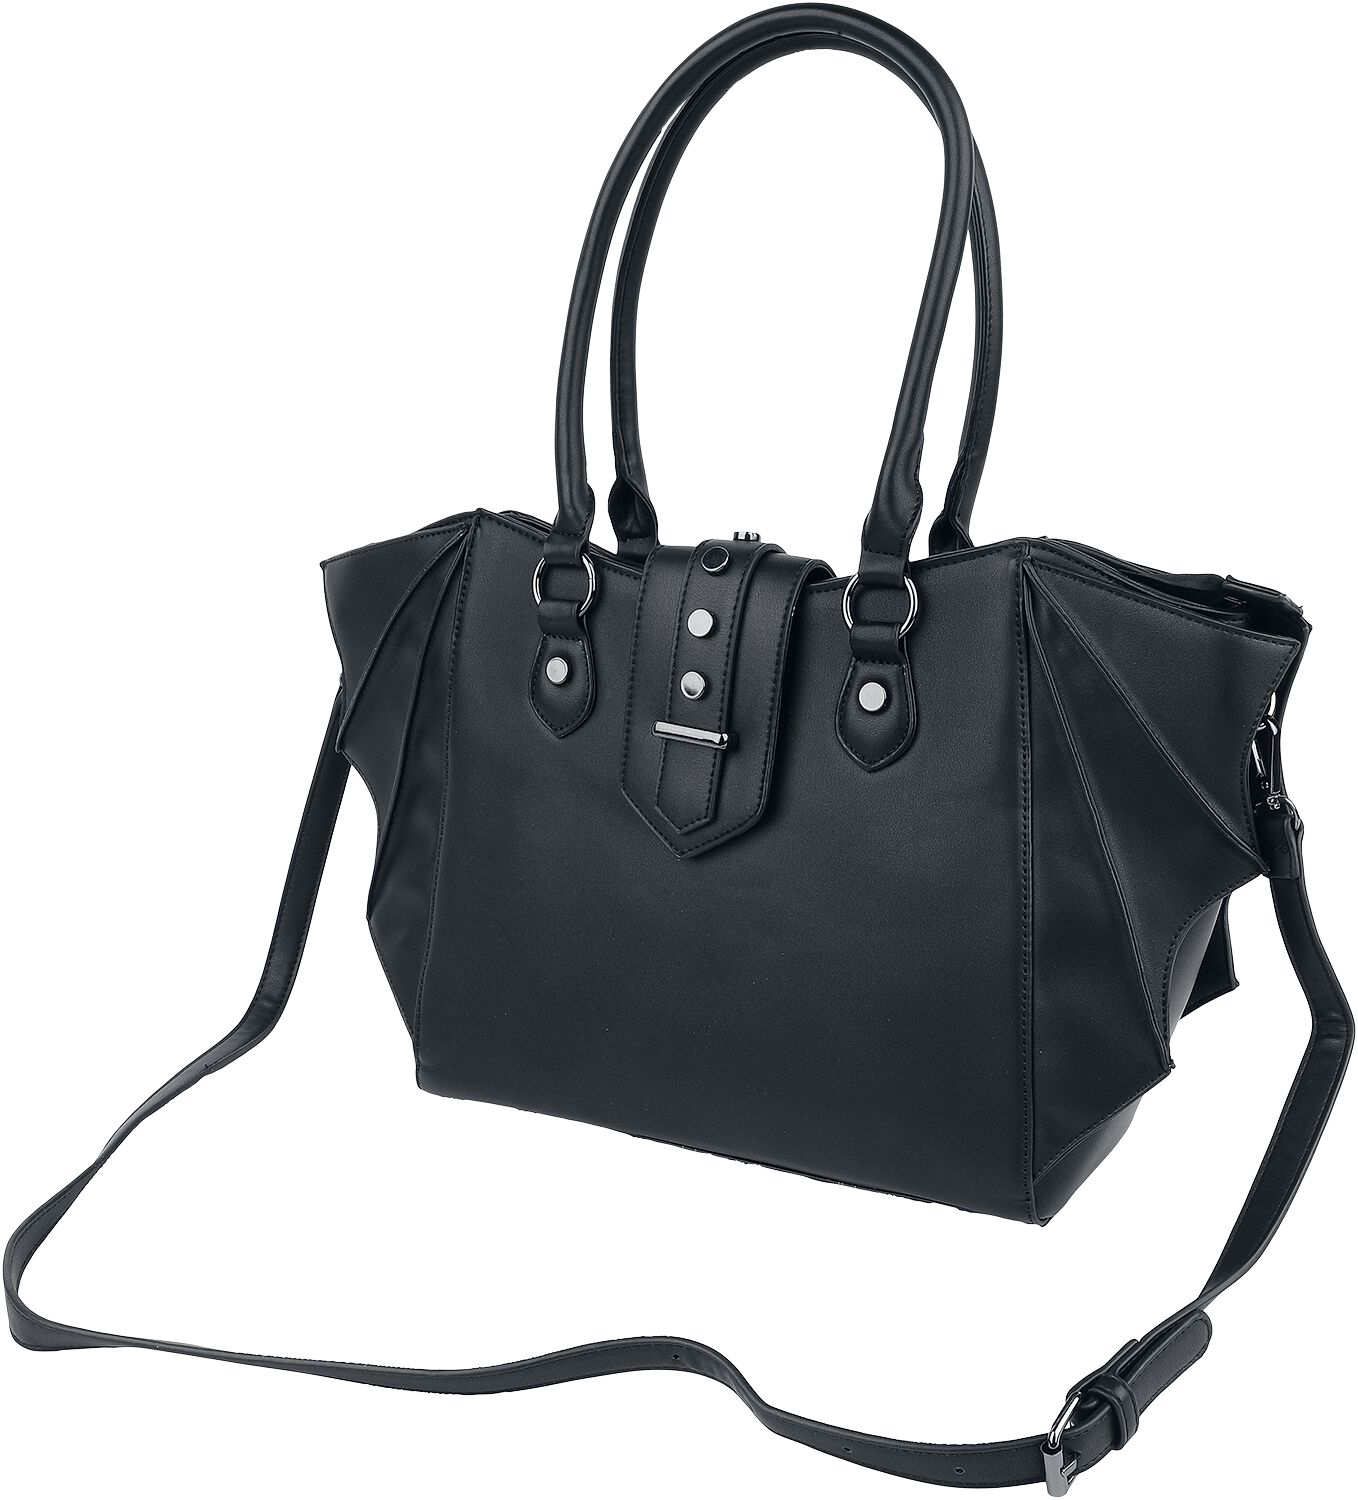 Banned Alternative - Gothic Handtasche - Annabelle - für Damen - schwarz